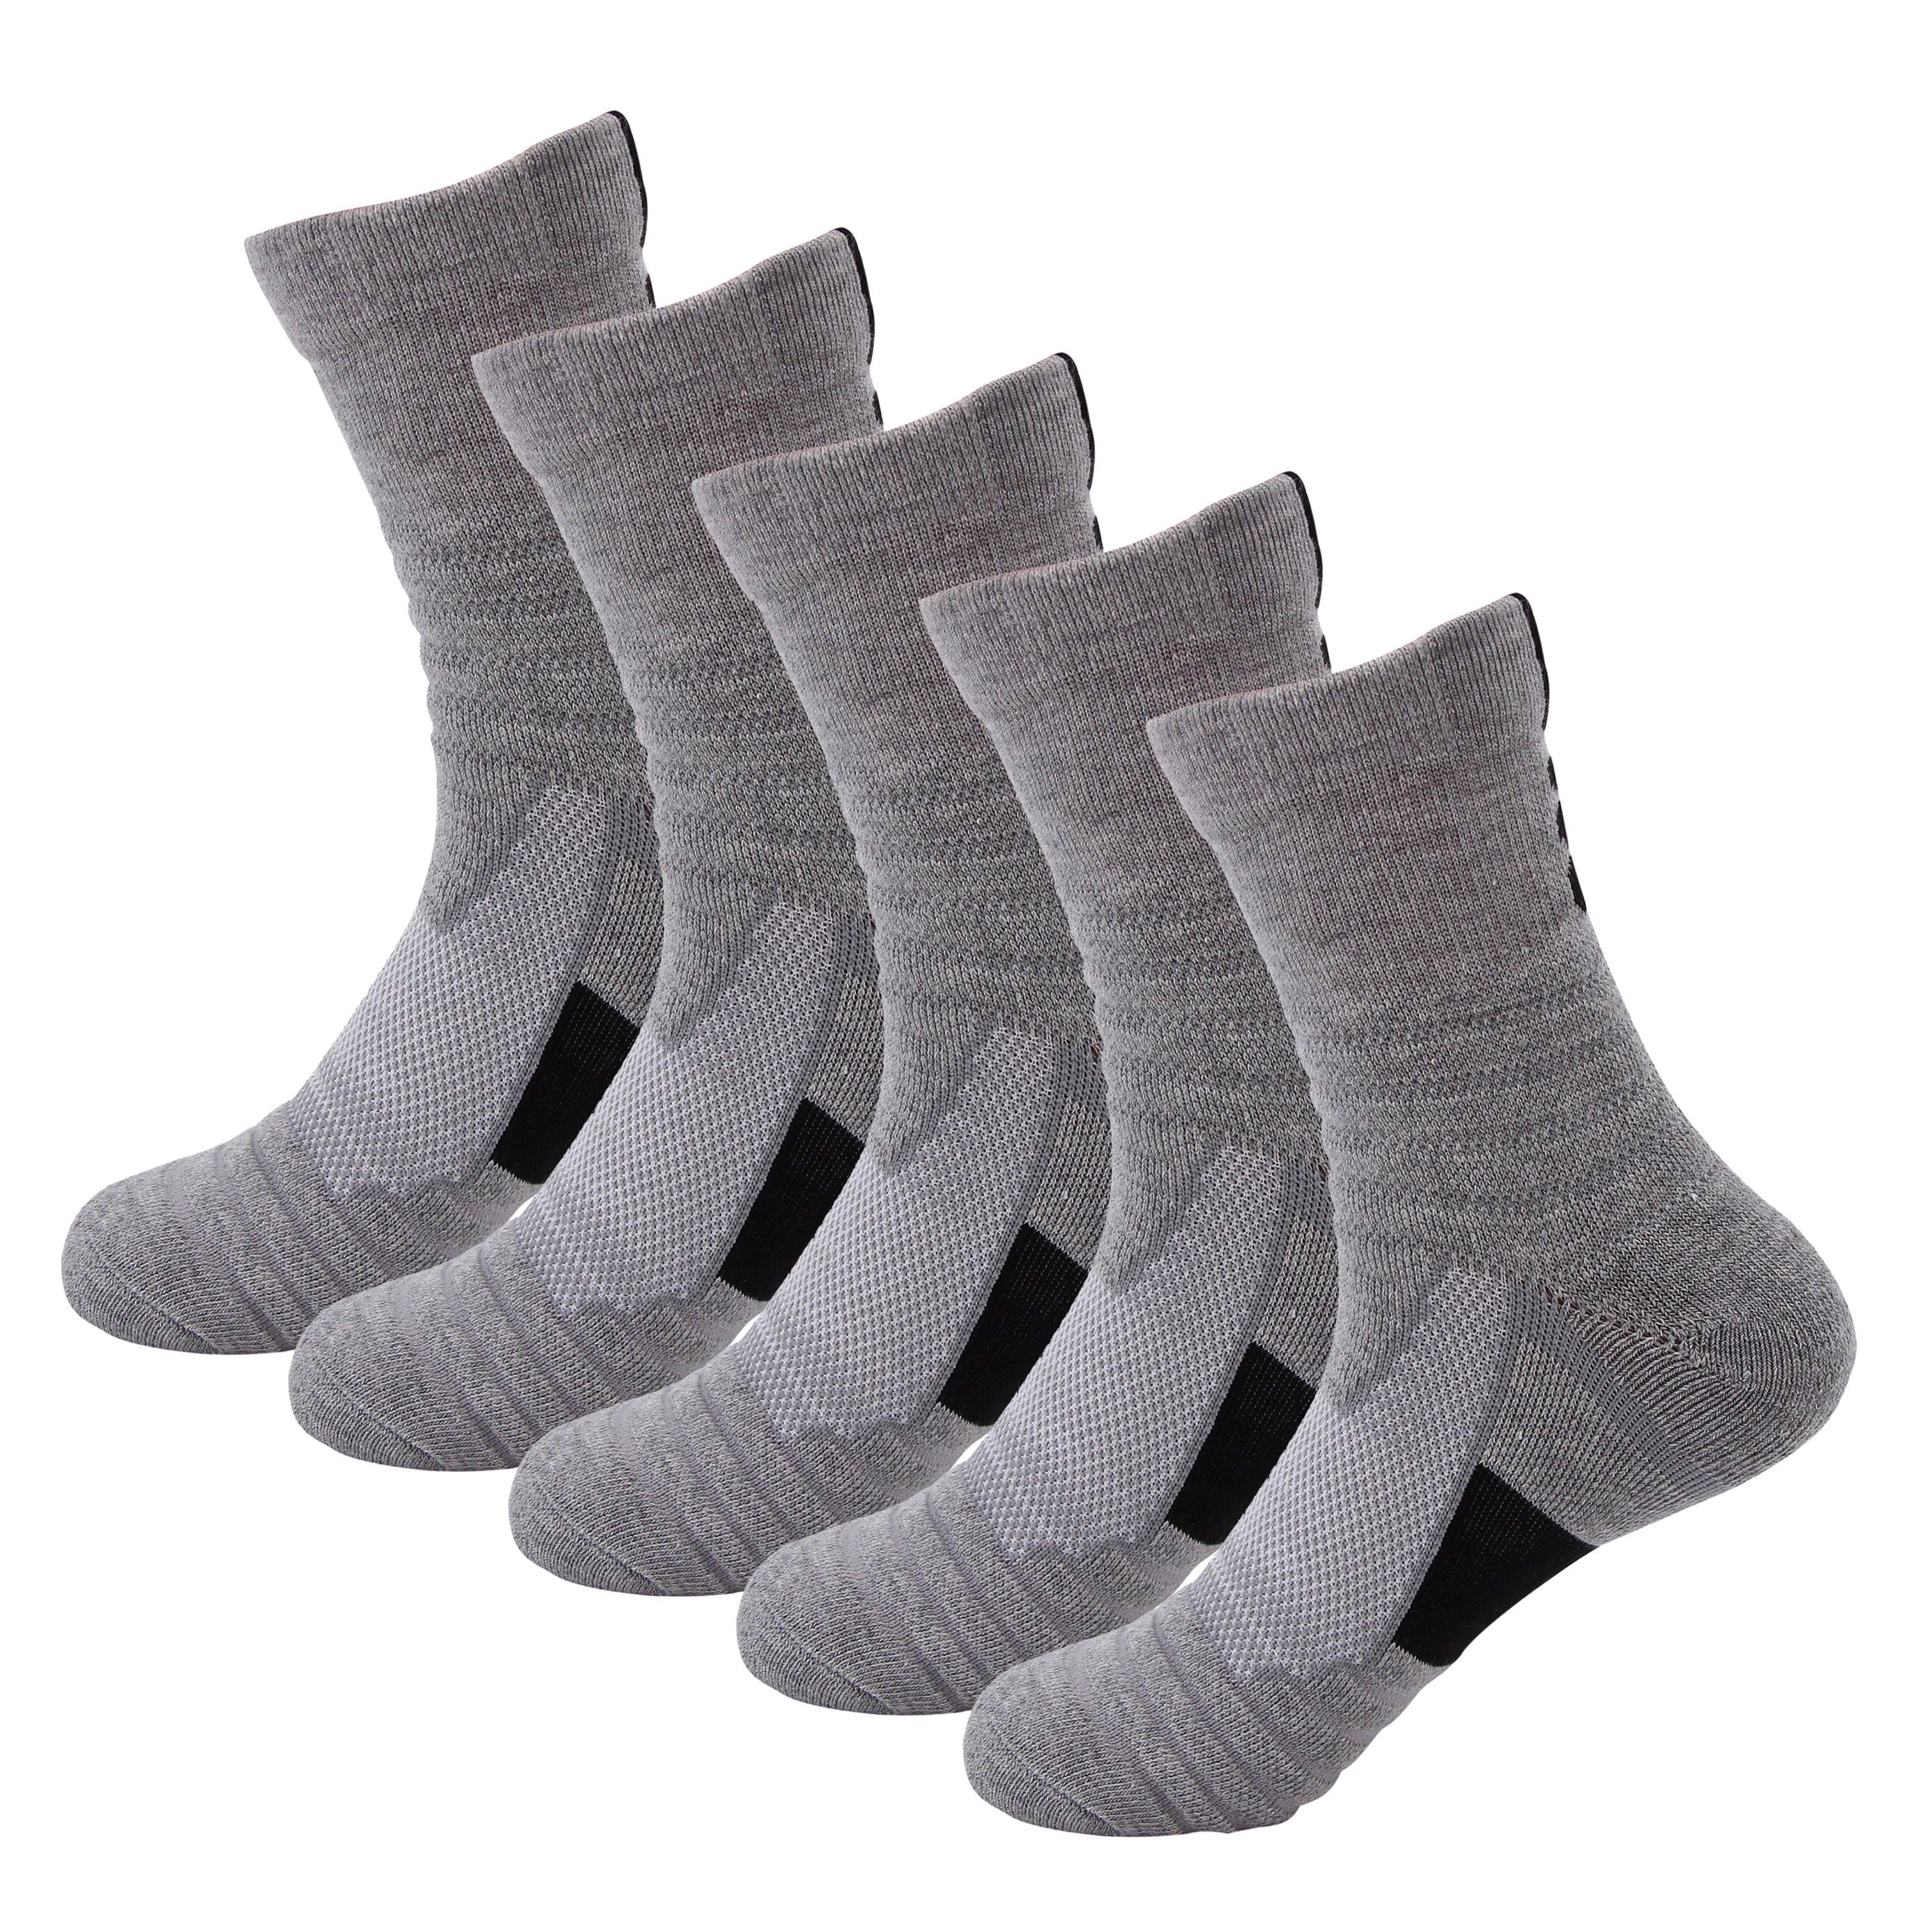 Men's Anti Slip Football Socks Athletic Long Socks Absorbent Sports Grip N6N6 